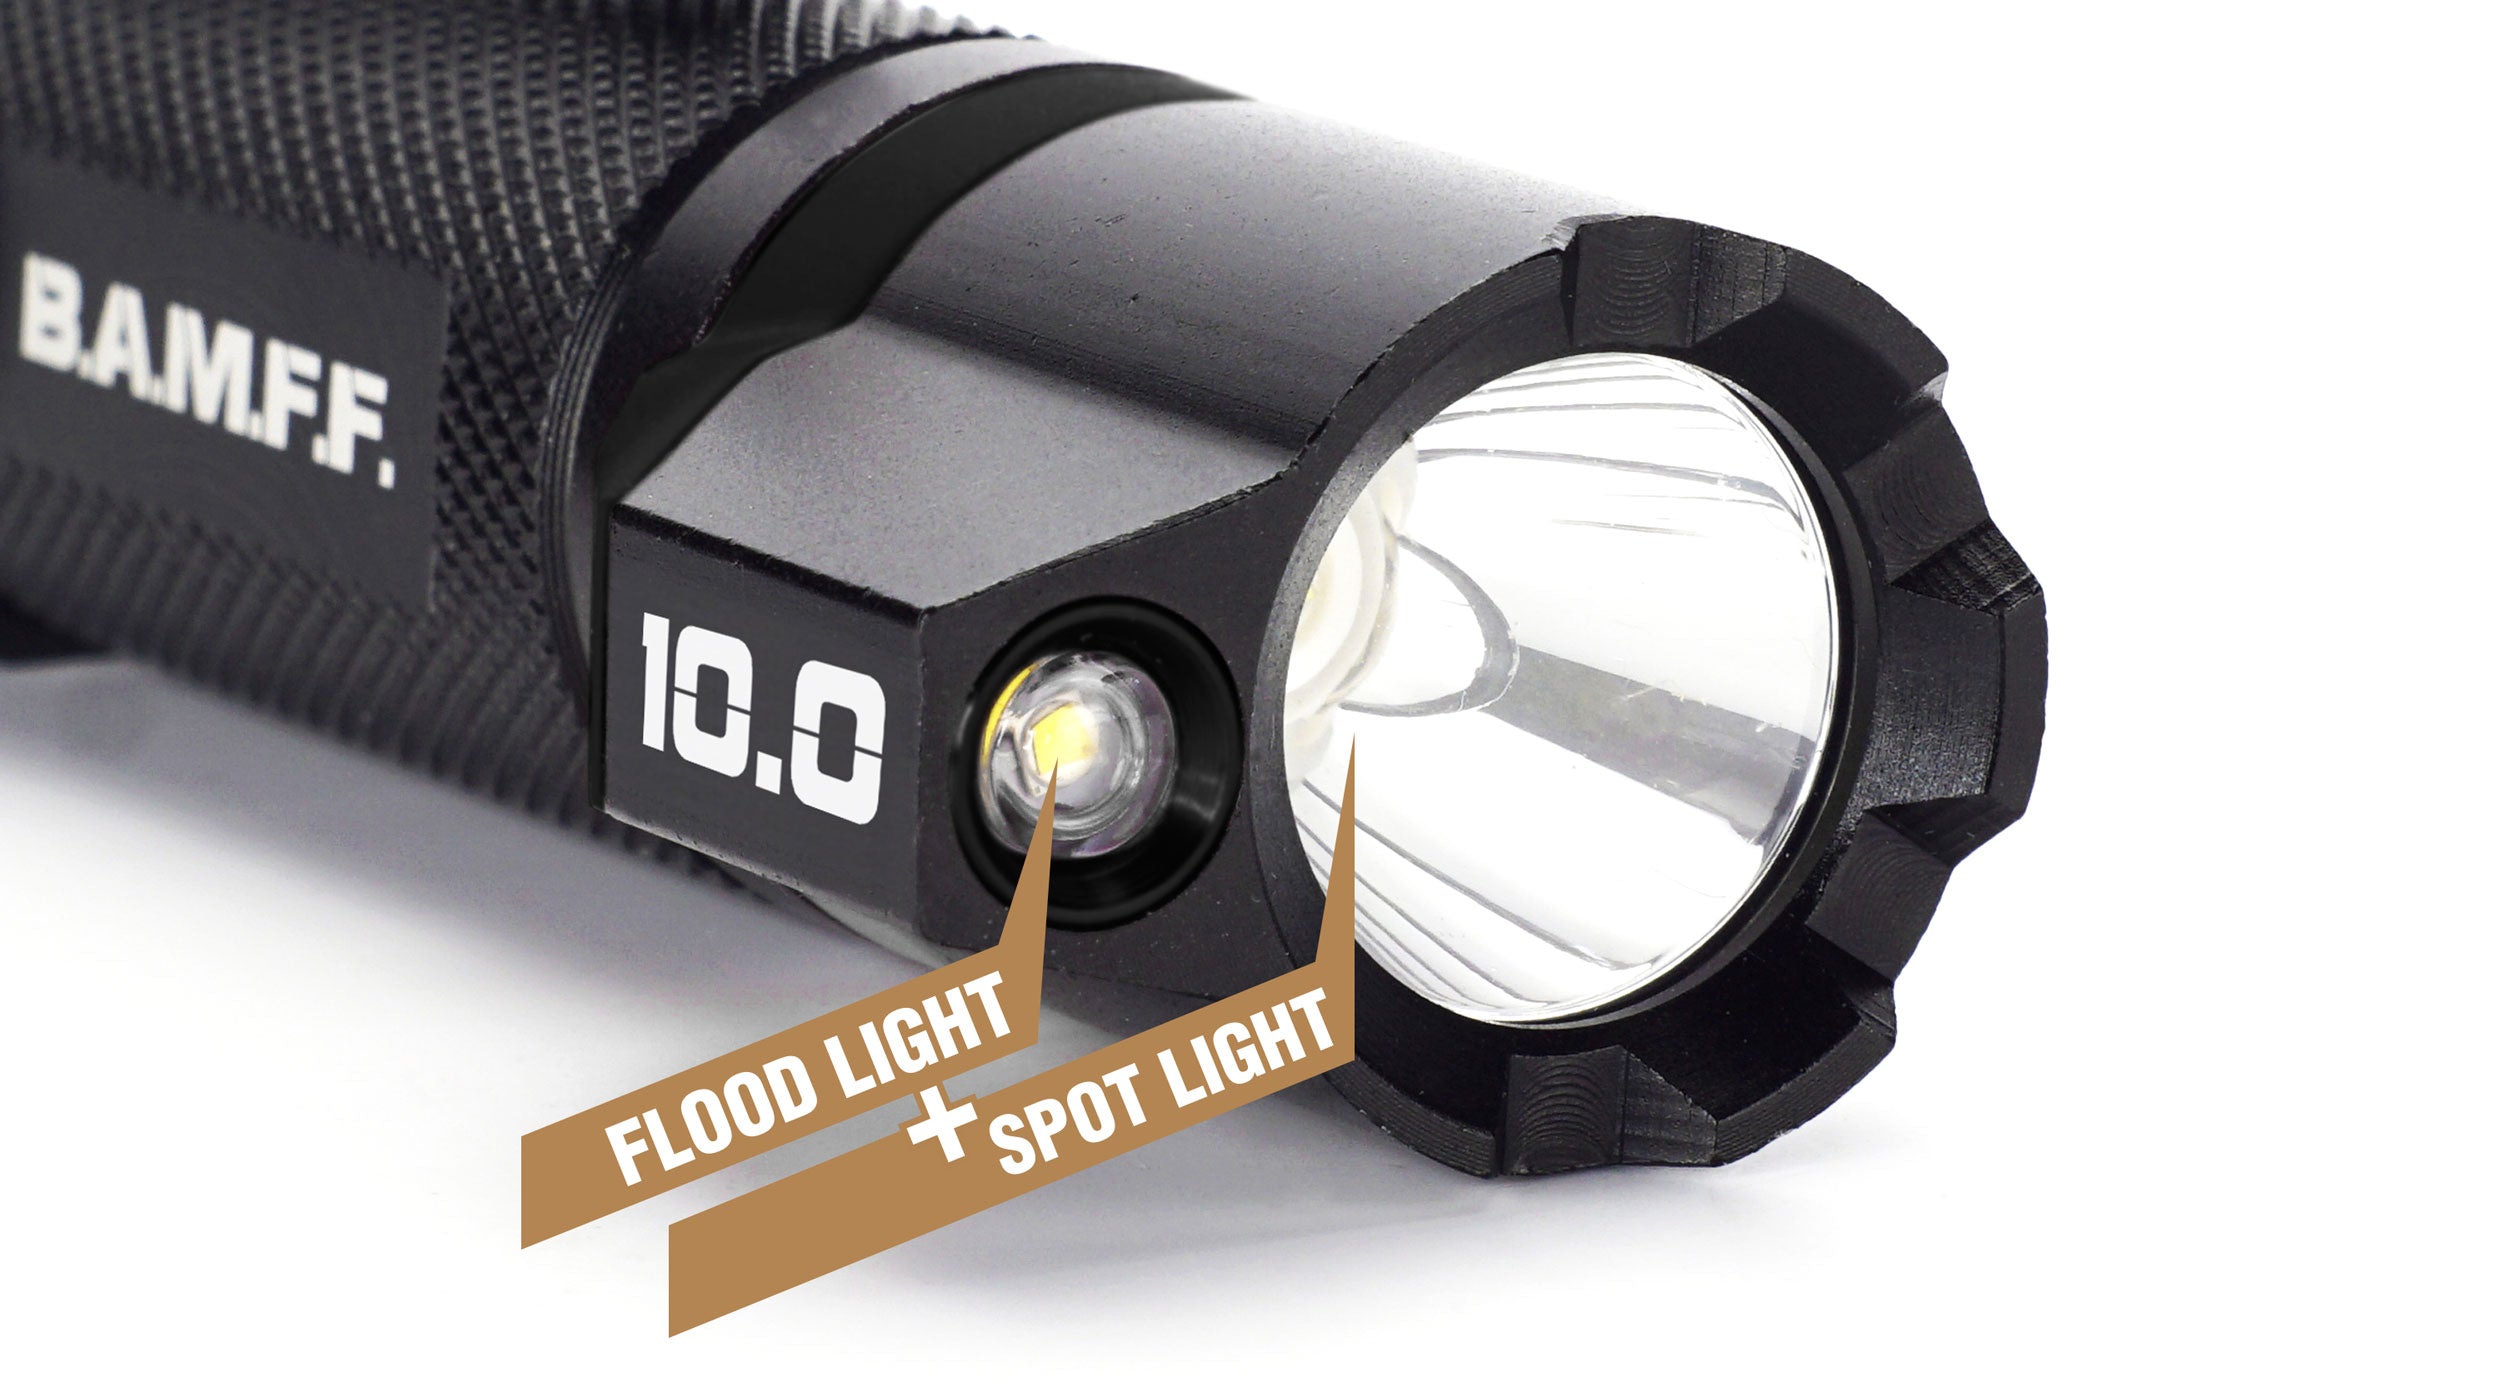 B.A.M.F.F. 10.0 Flashlight Spot Light with Flood Light